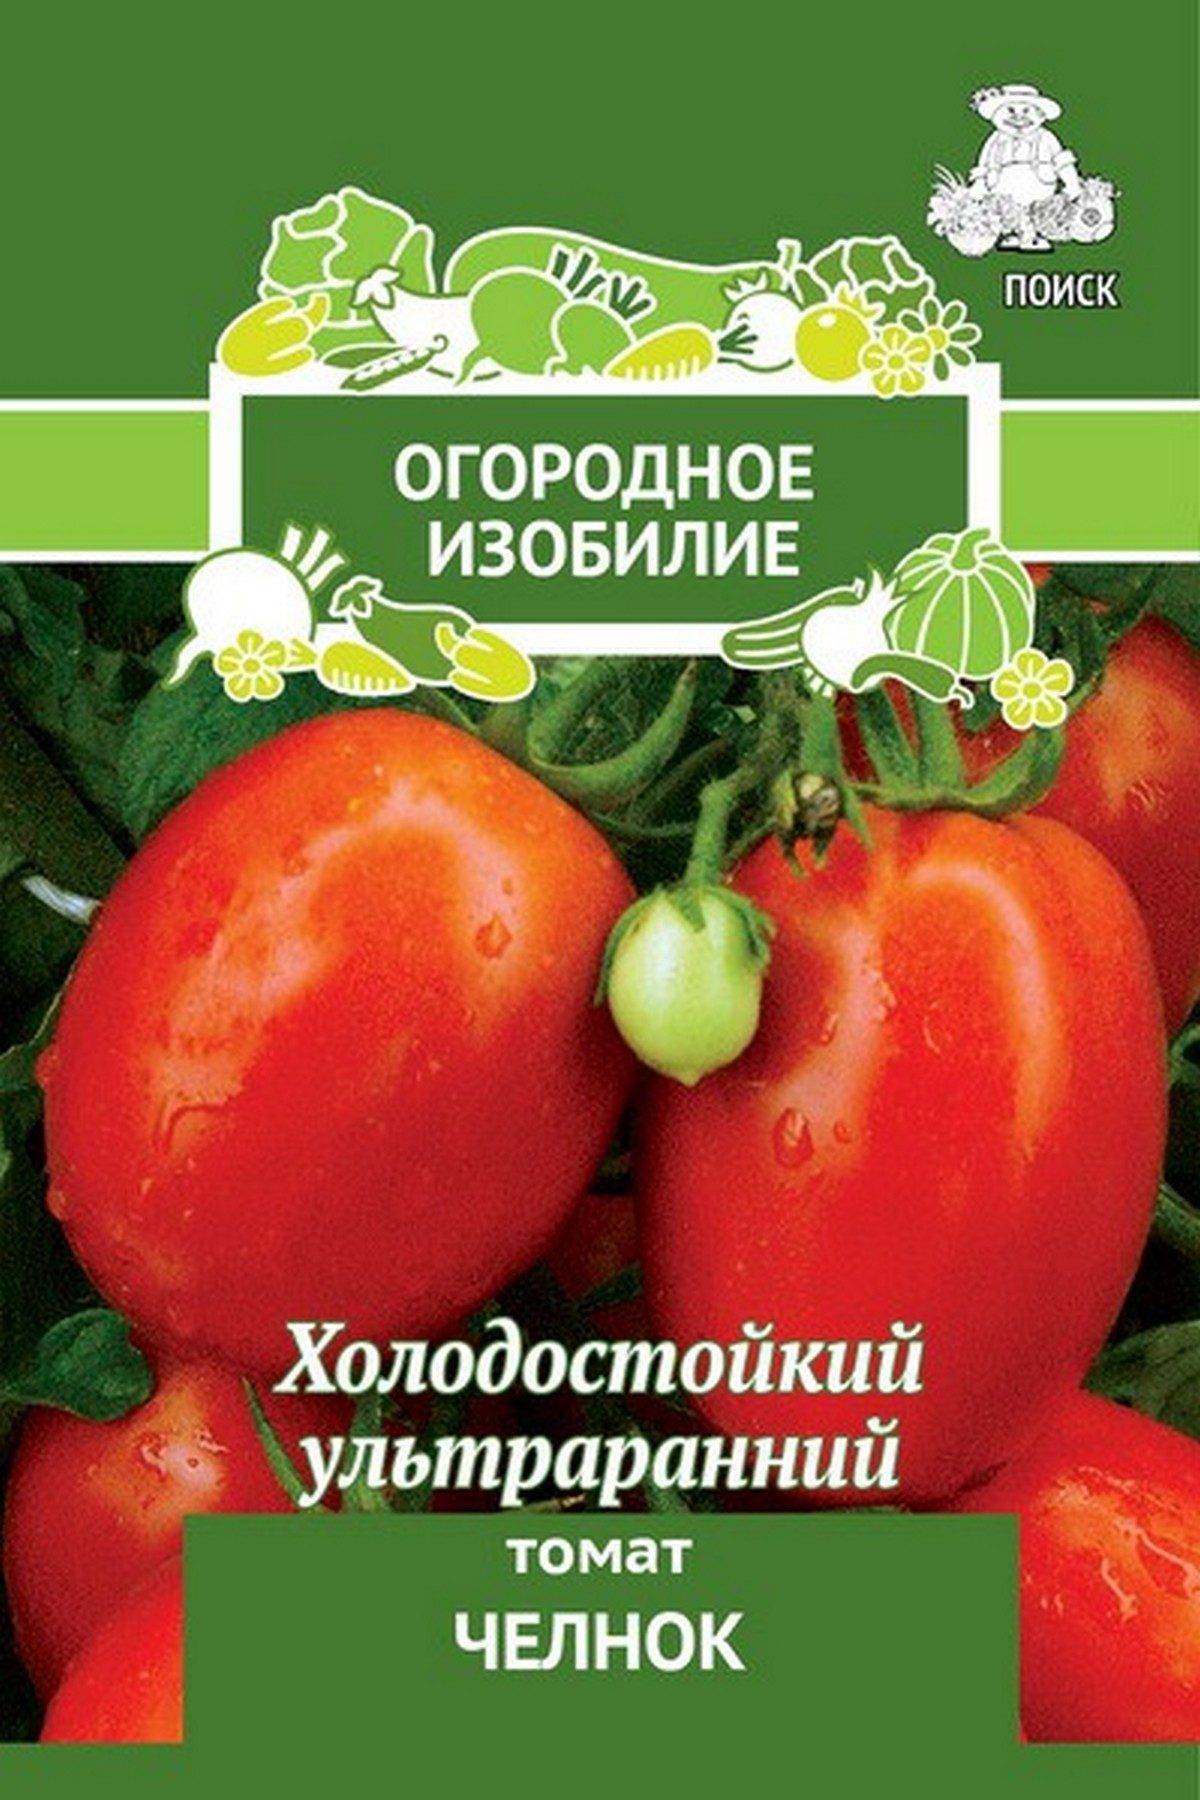 Томат Челнок (Огородное изобилие) 0,1 г П семена (Изображение 1)